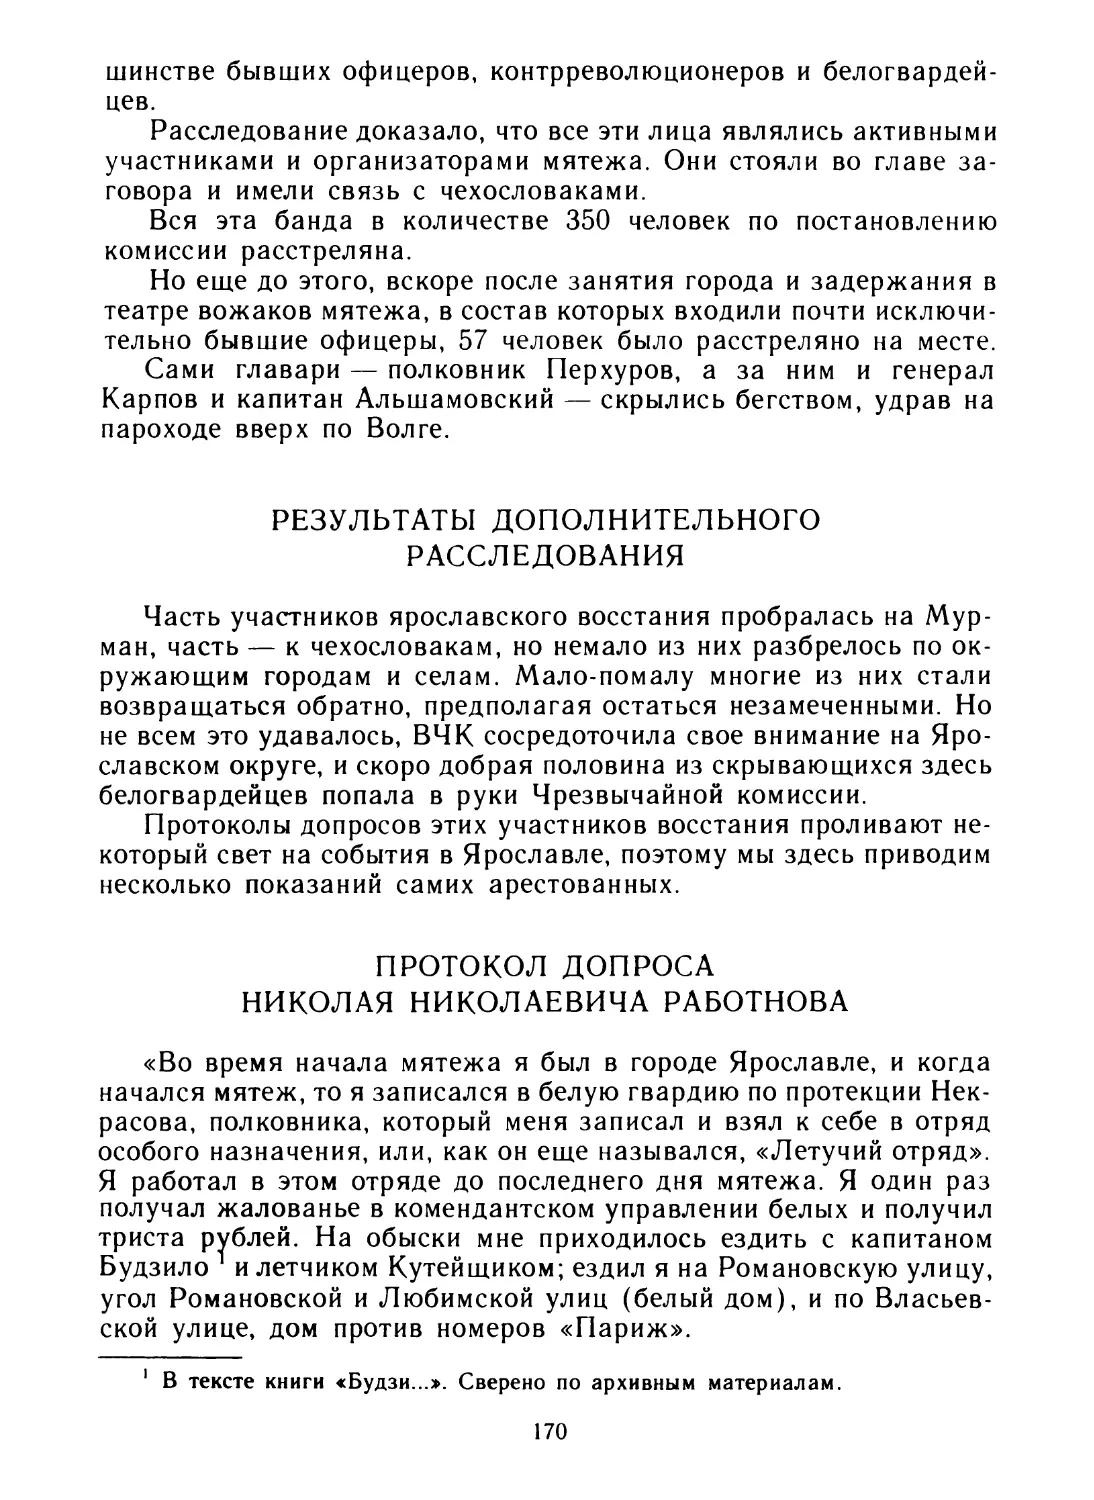 Результаты дополнительного расследования
Протокол допроса Николая Николаевича Работнова